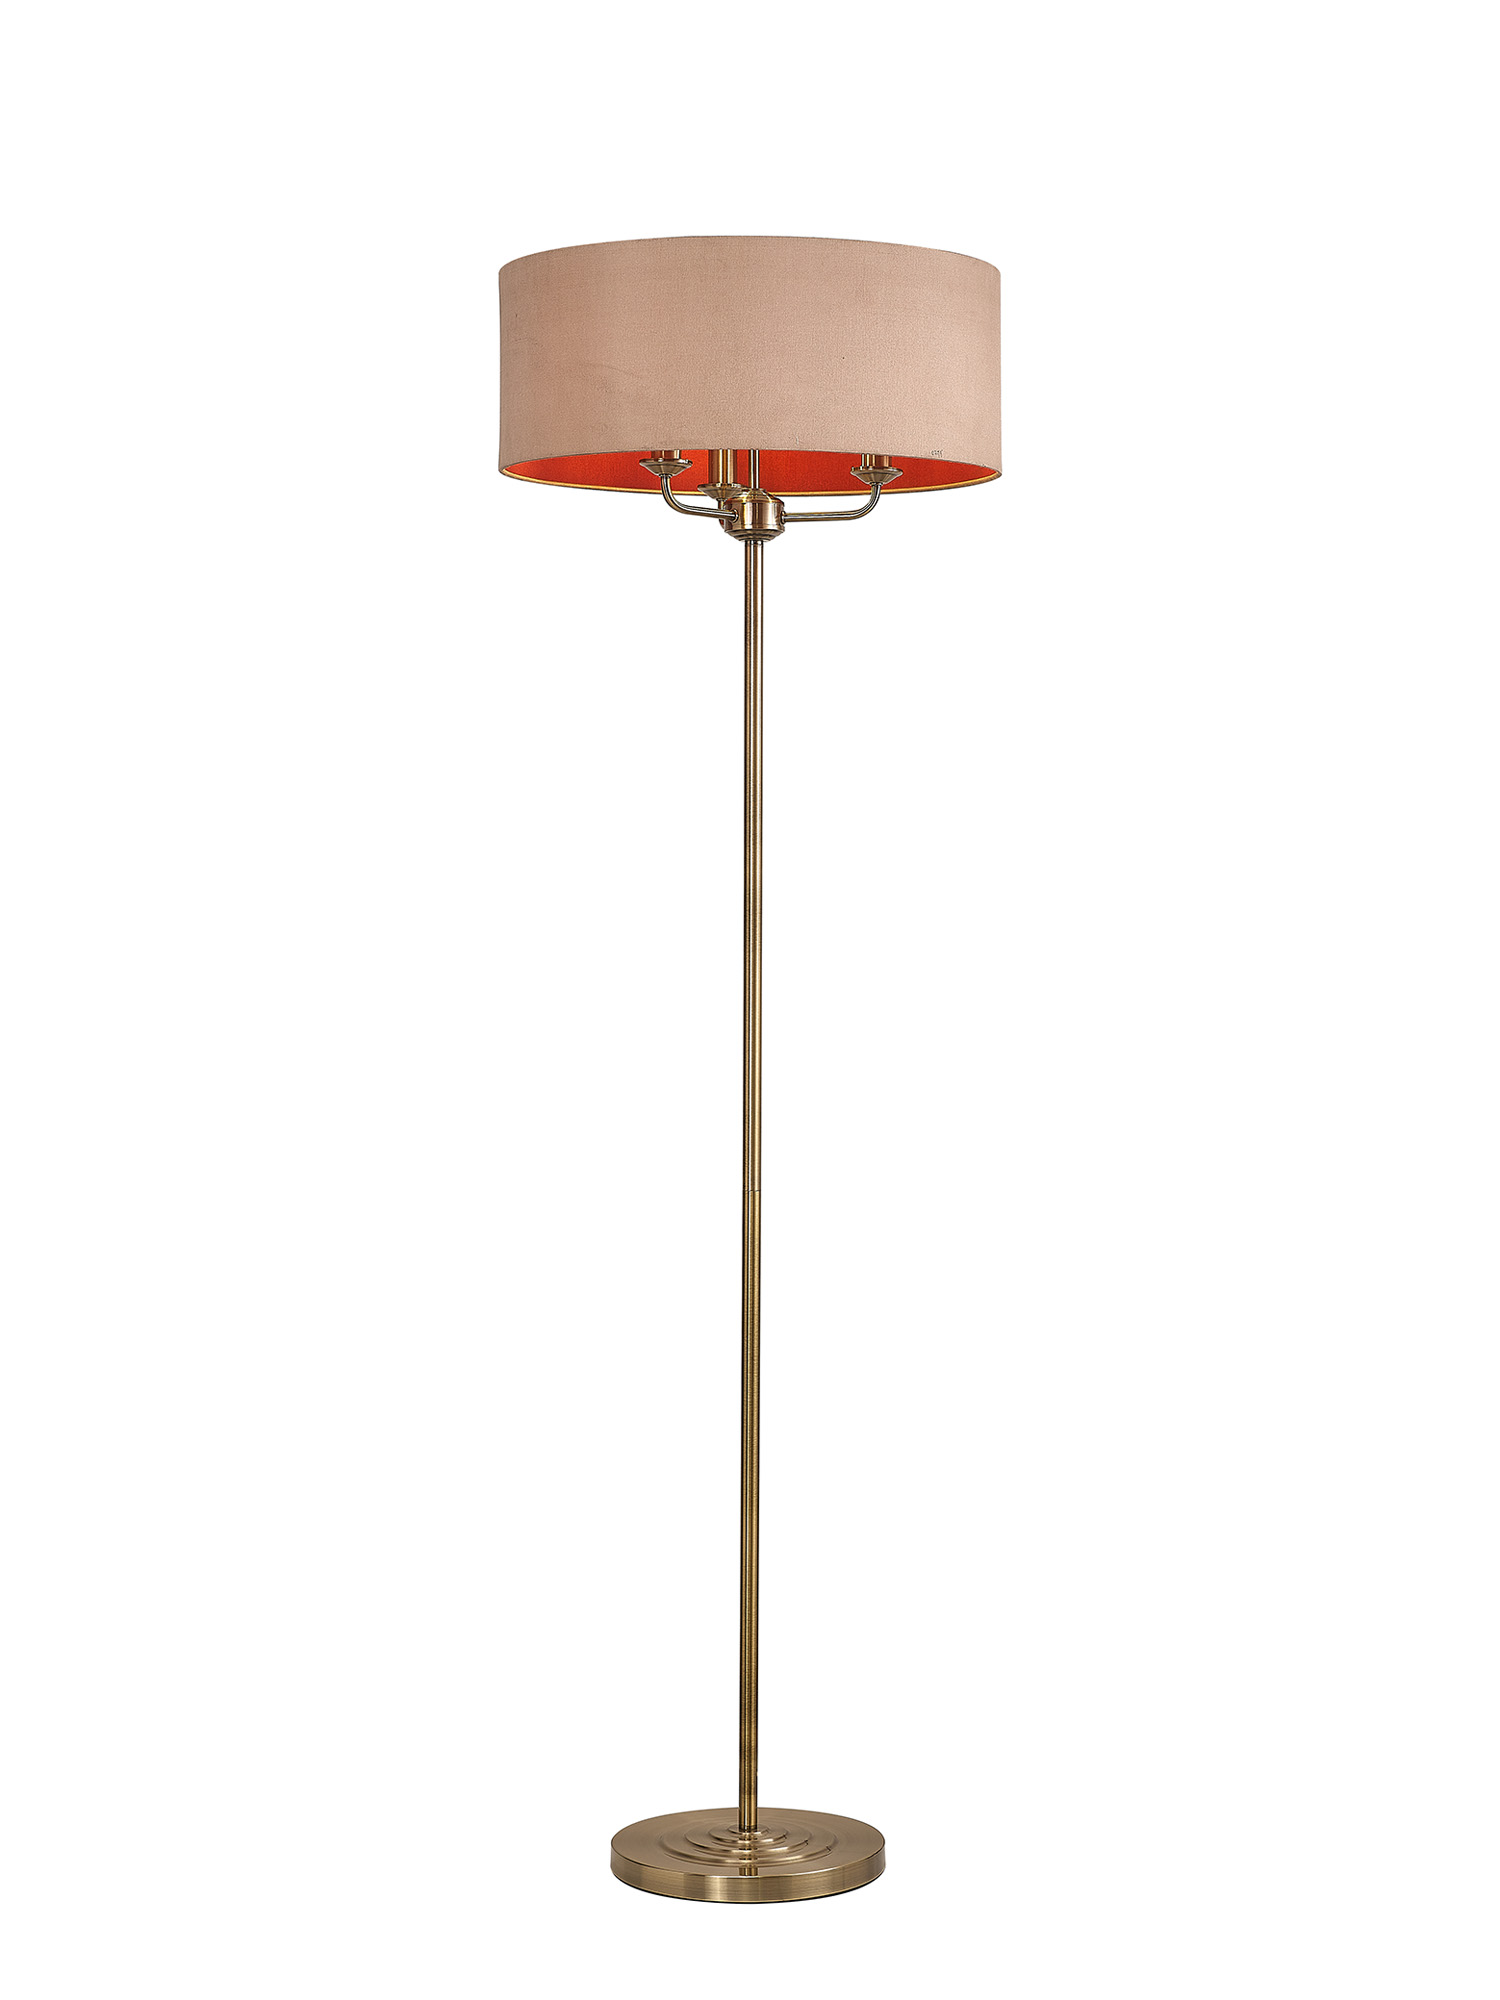 DK0911  Banyan 45cm 3 Light Floor Lamp Antique Brass; Antique Gold